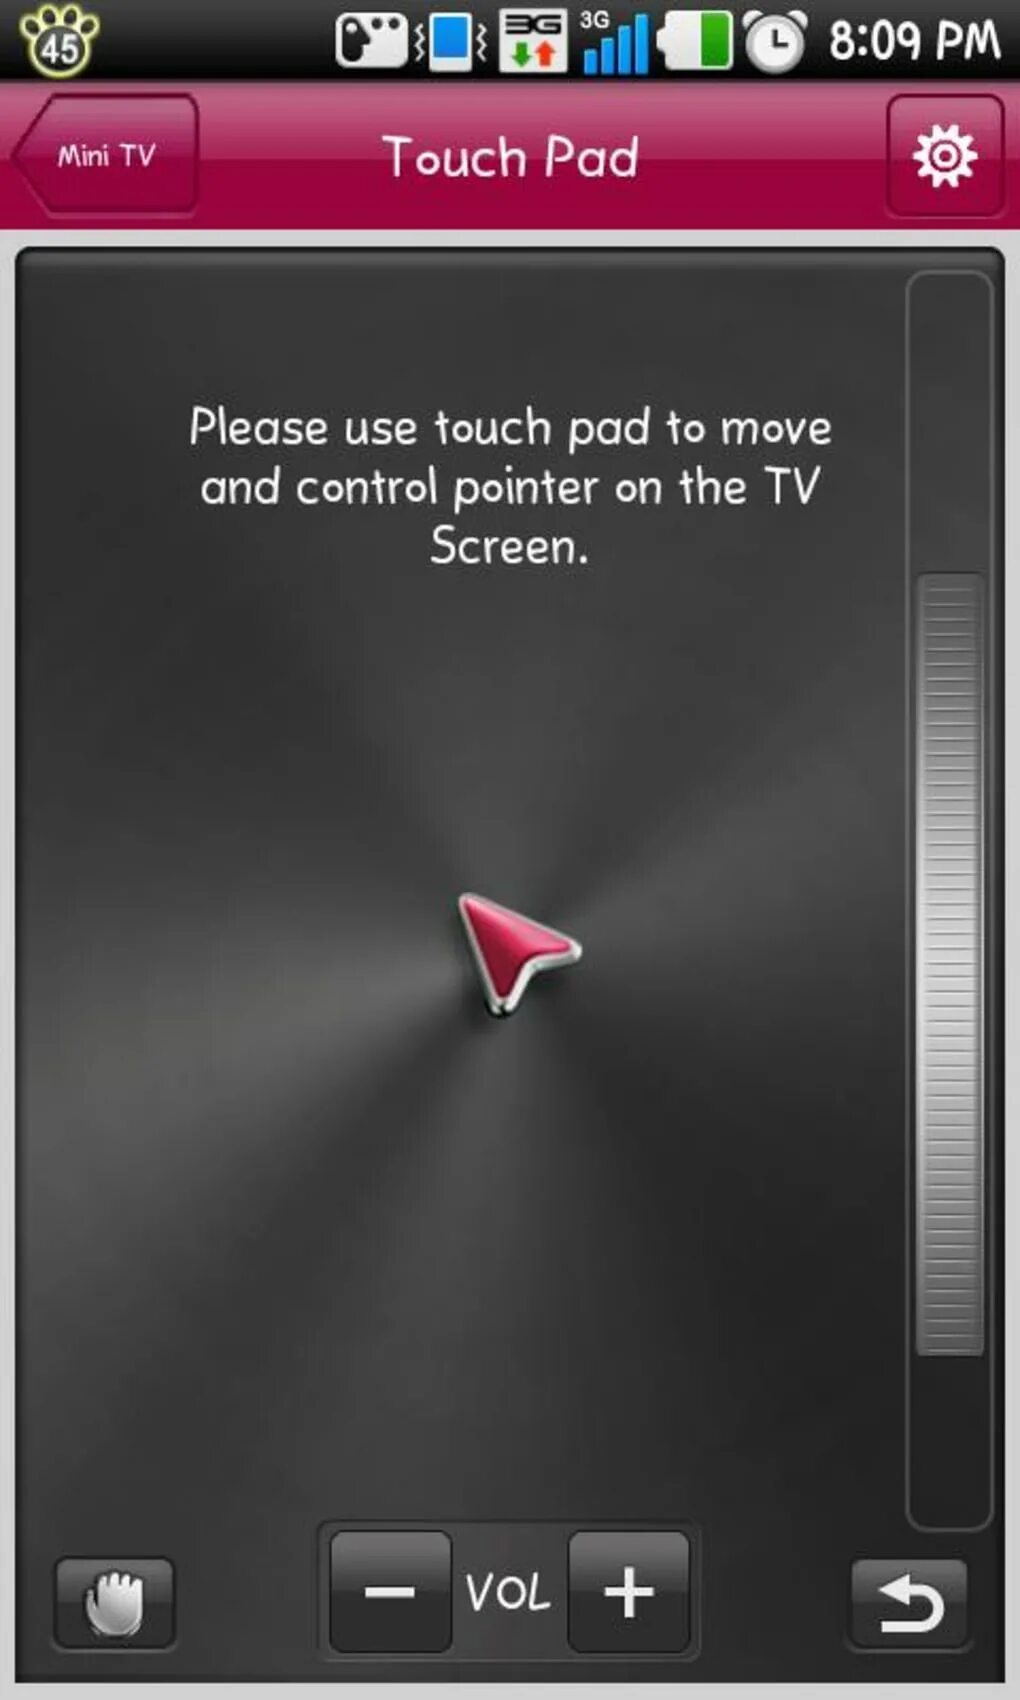 LG TV Remote приложение. Программы для управления телевизором с телефона андроид. Управление телевизором LG со смартфона. Прога пульт для андроид ТВ. Пульт lg на телефоне андроид